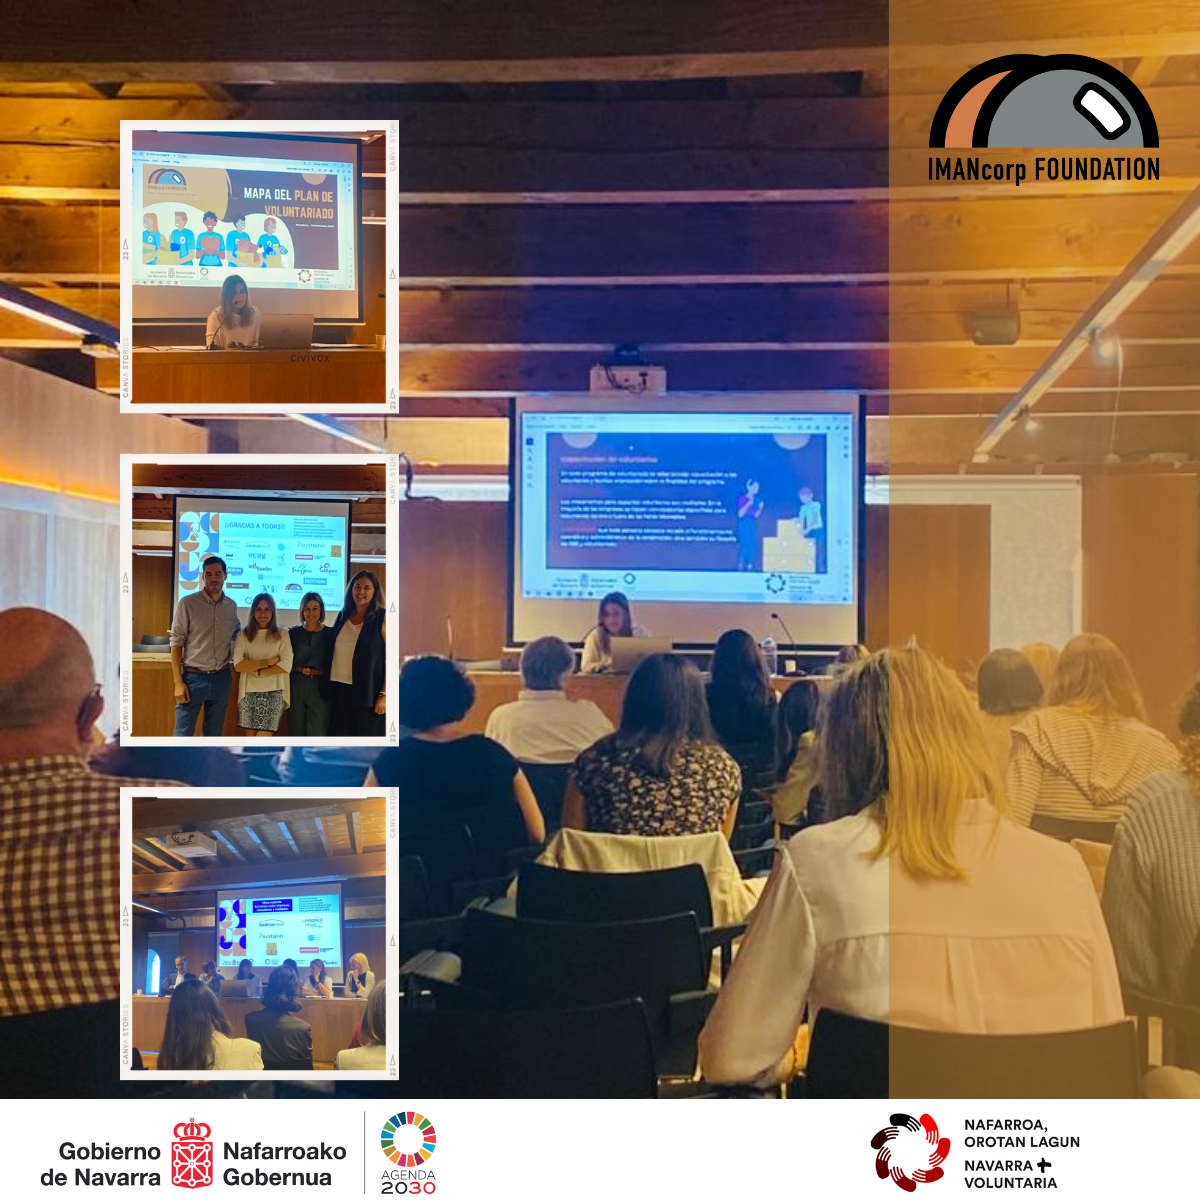 IMANcorp FOUNDATION imparte un taller sobre cómo organizar un Plan de Voluntariado Corporativo en el marco del Foro de Voluntariado Corporativo en Pamplona